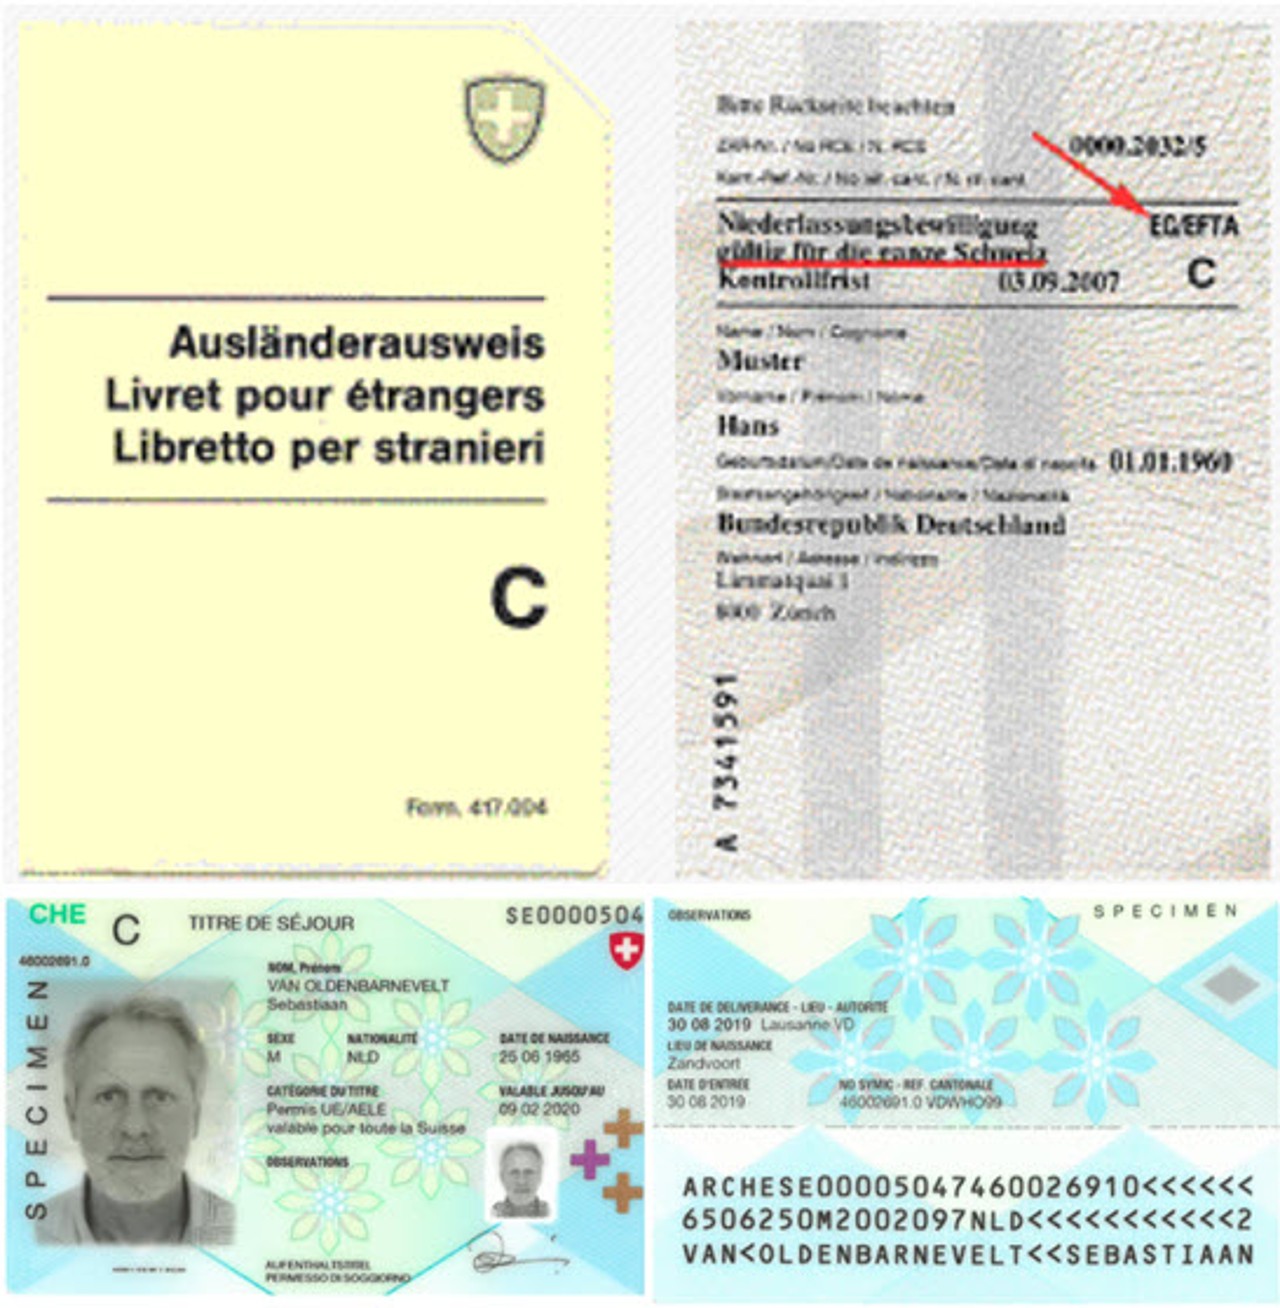 Ausländerausweis C (oben) und Ausweis C AA19-EU/EFTA (unten)